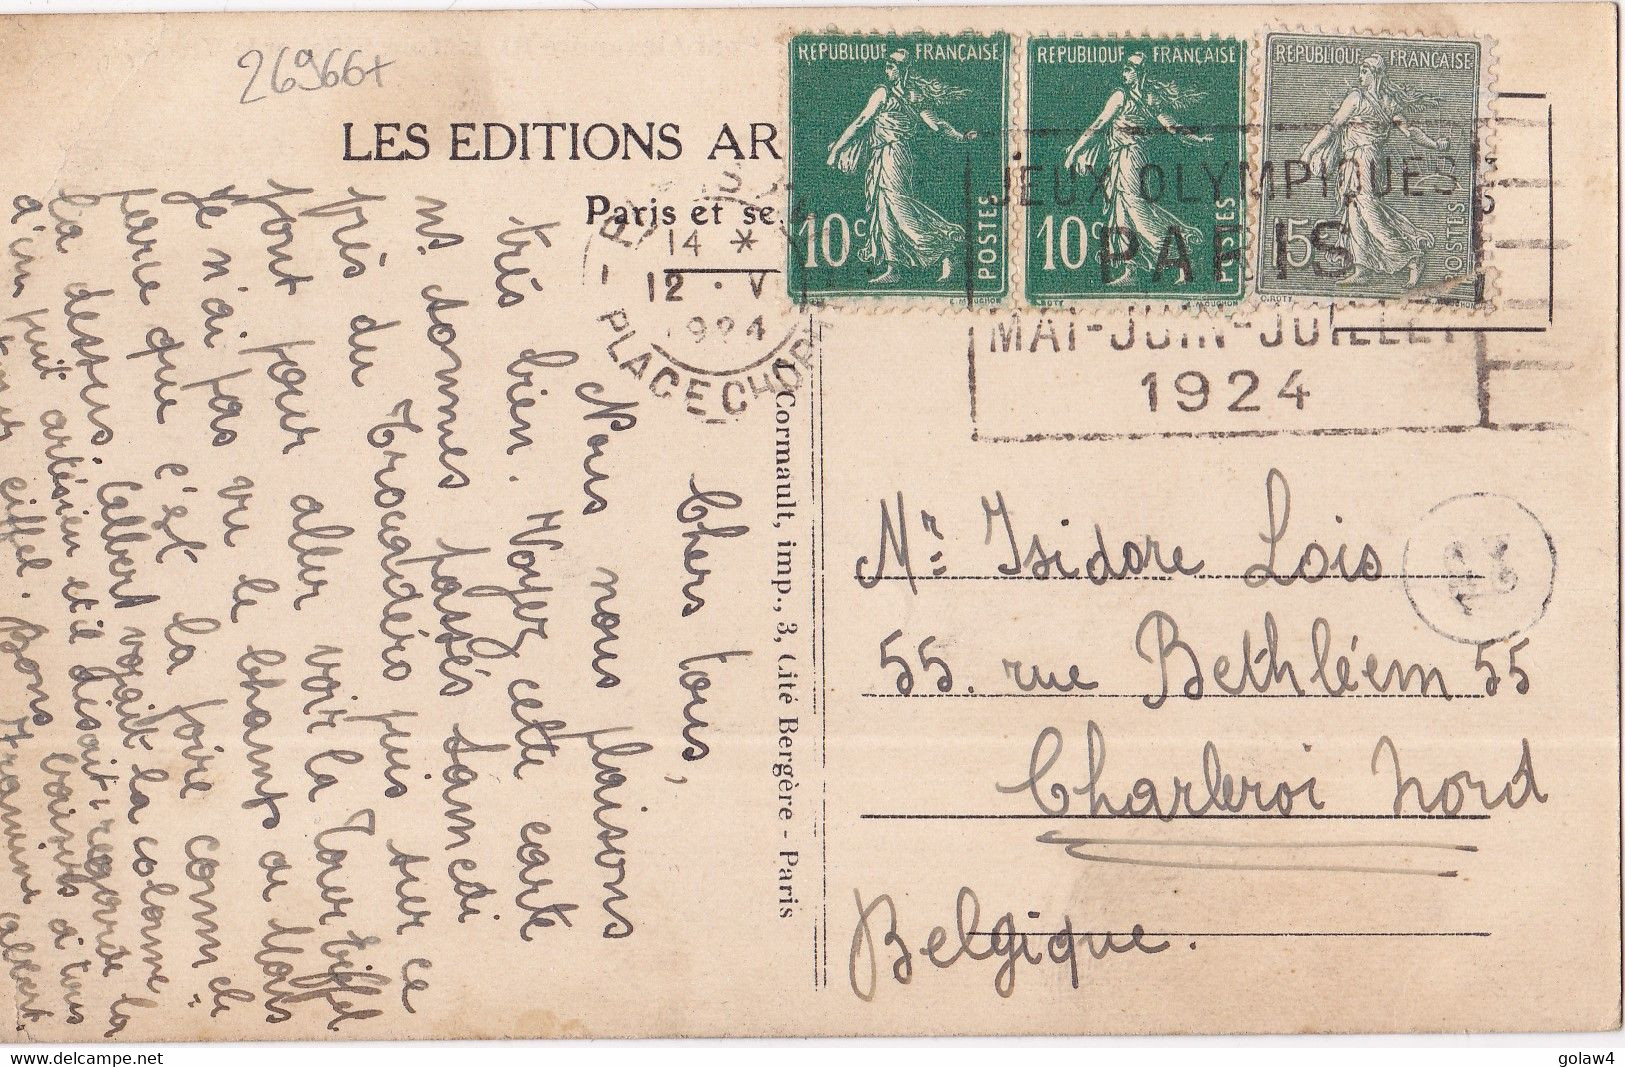 26966# CARTE POSTALE Obl PARIS XVI PLACE CHOPIN 12 V 1924 JEUX OLYMPIQUES MAI JUIN JUILLET OMEC OLYMPICS GAMES CHARLEROI - Ete 1924: Paris